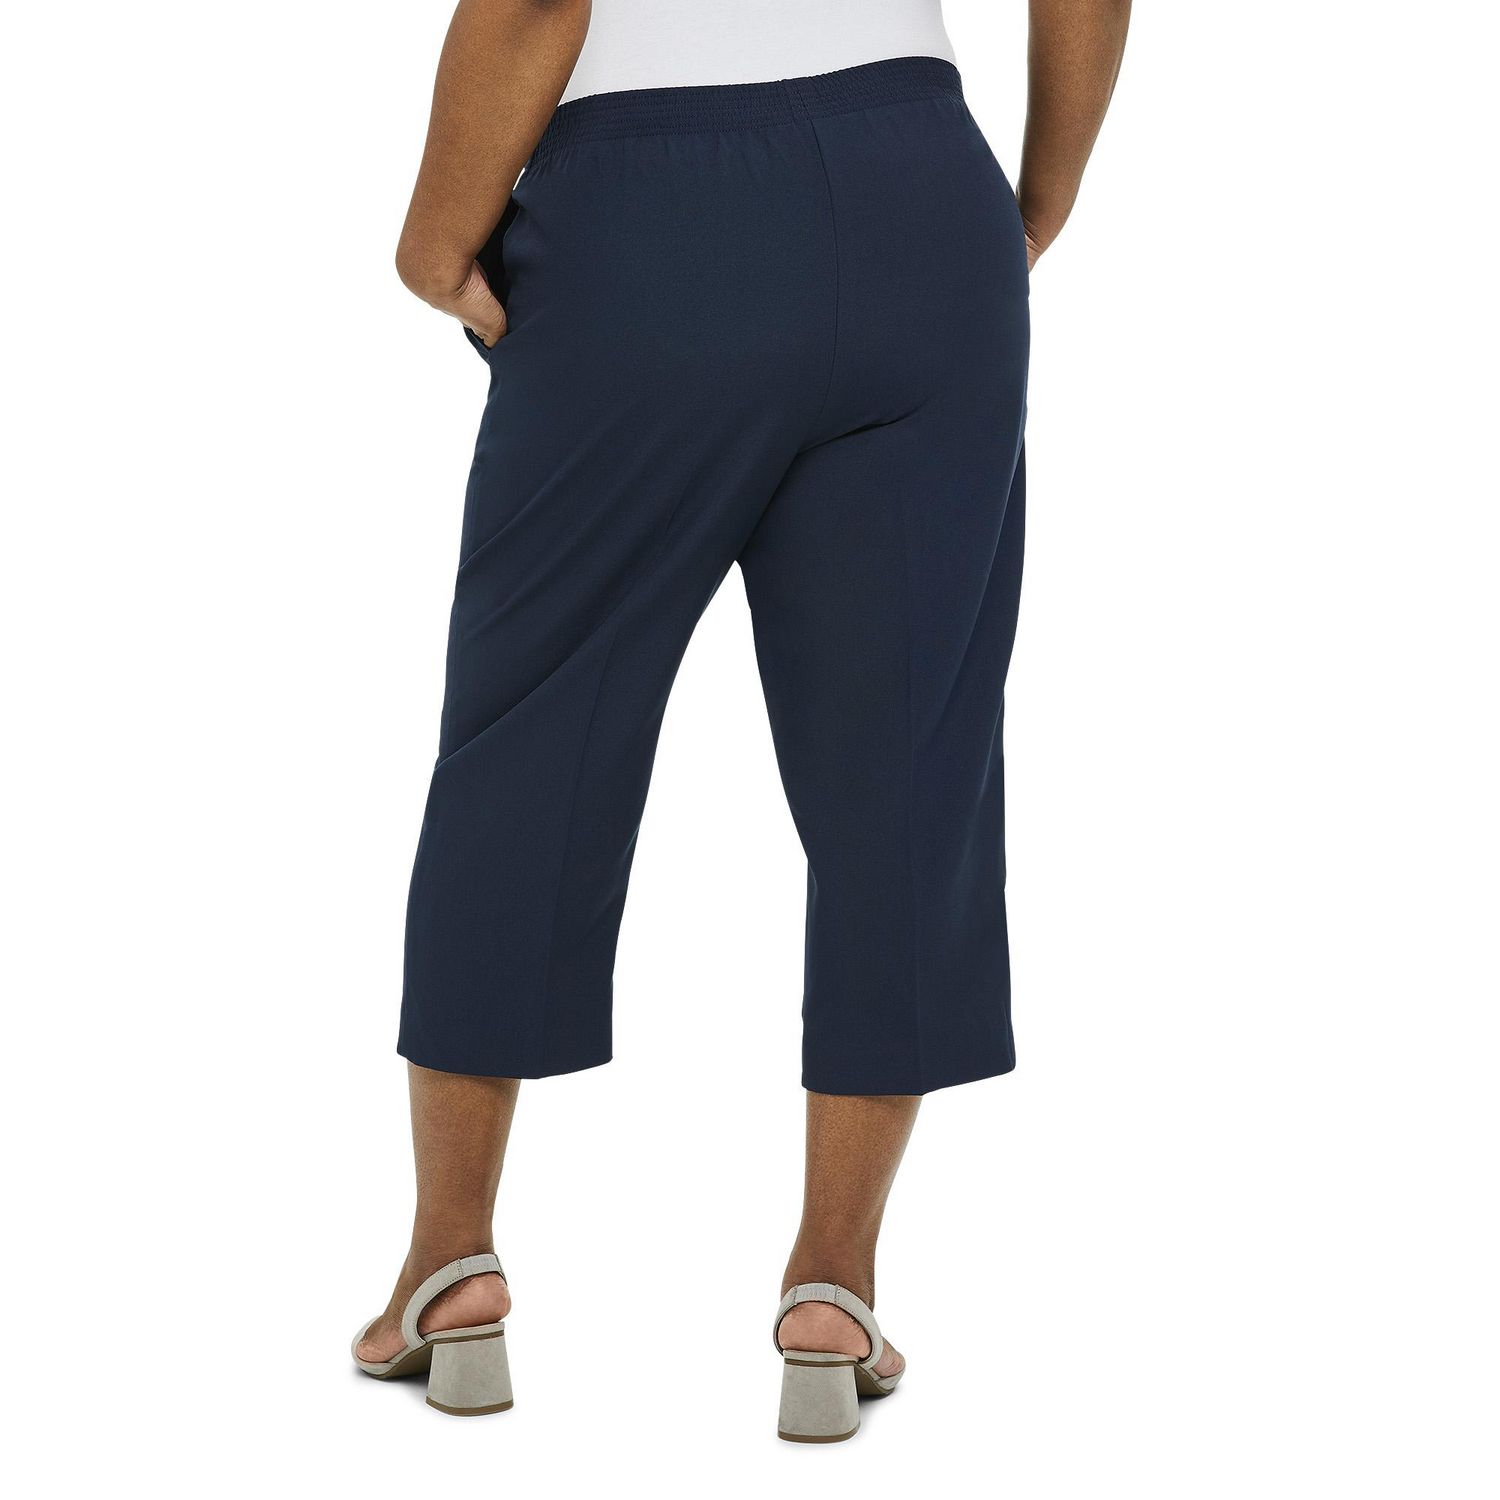 Harve Benard Polyester Capri Pants for Women